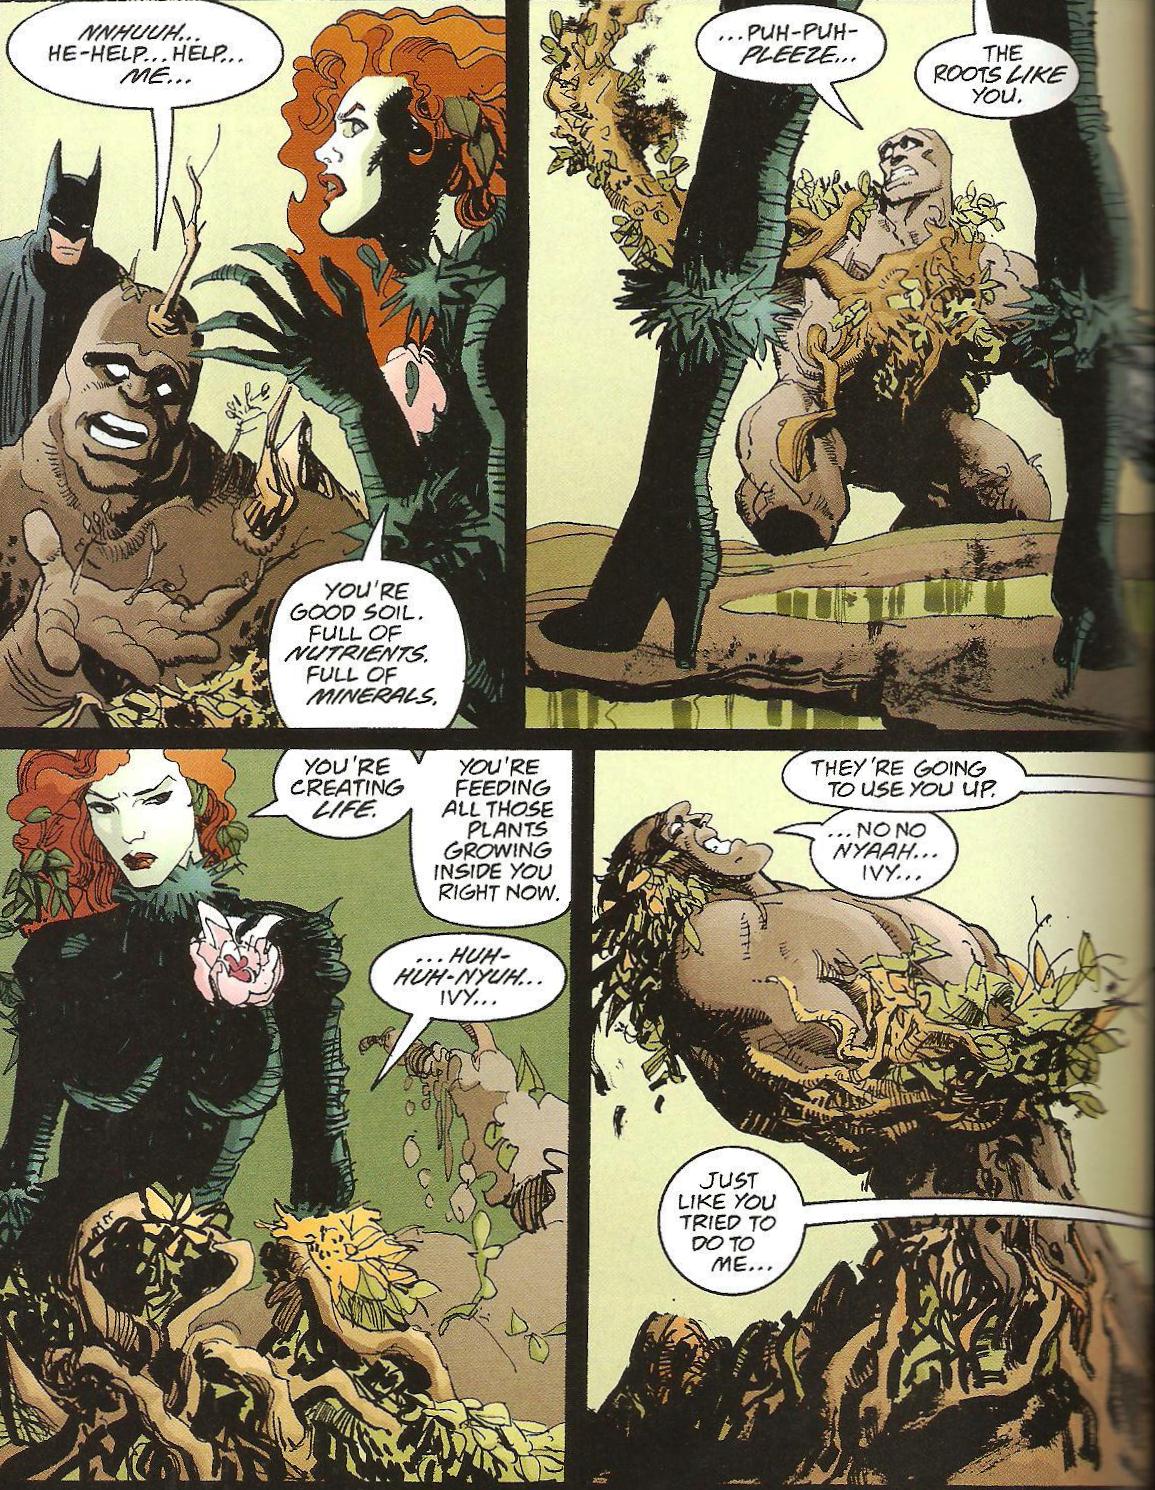 From Detective Comics (Vol. 1) #735 (1999)